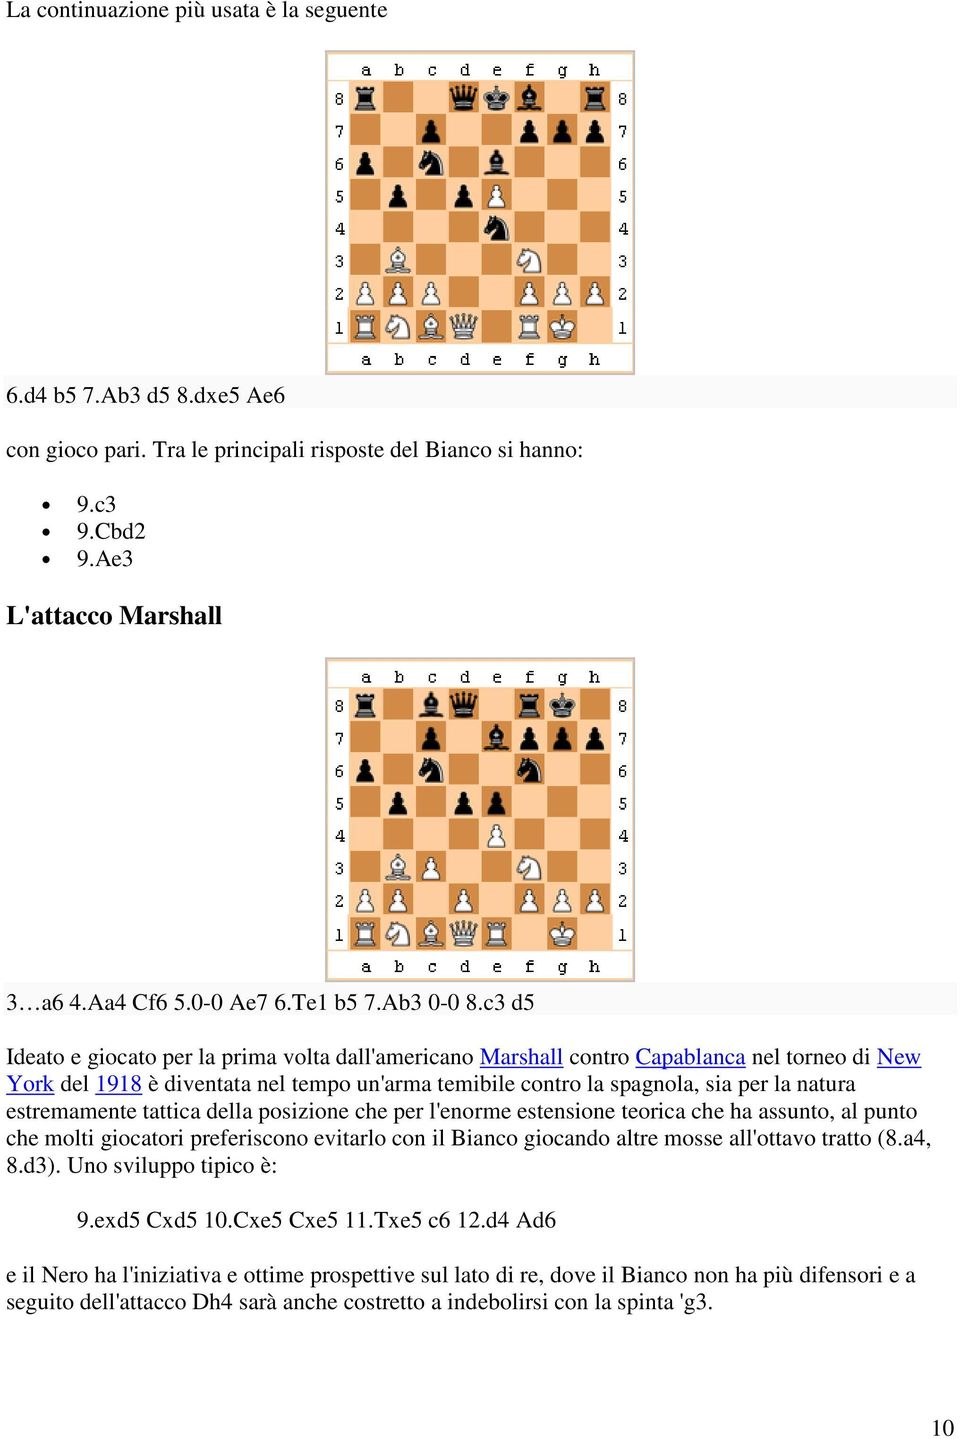 c3 d5 Ideato e giocato per la prima volta dall'americano Marshall contro Capablanca nel torneo di New York del 1918 è diventata nel tempo un'arma temibile contro la spagnola, sia per la natura